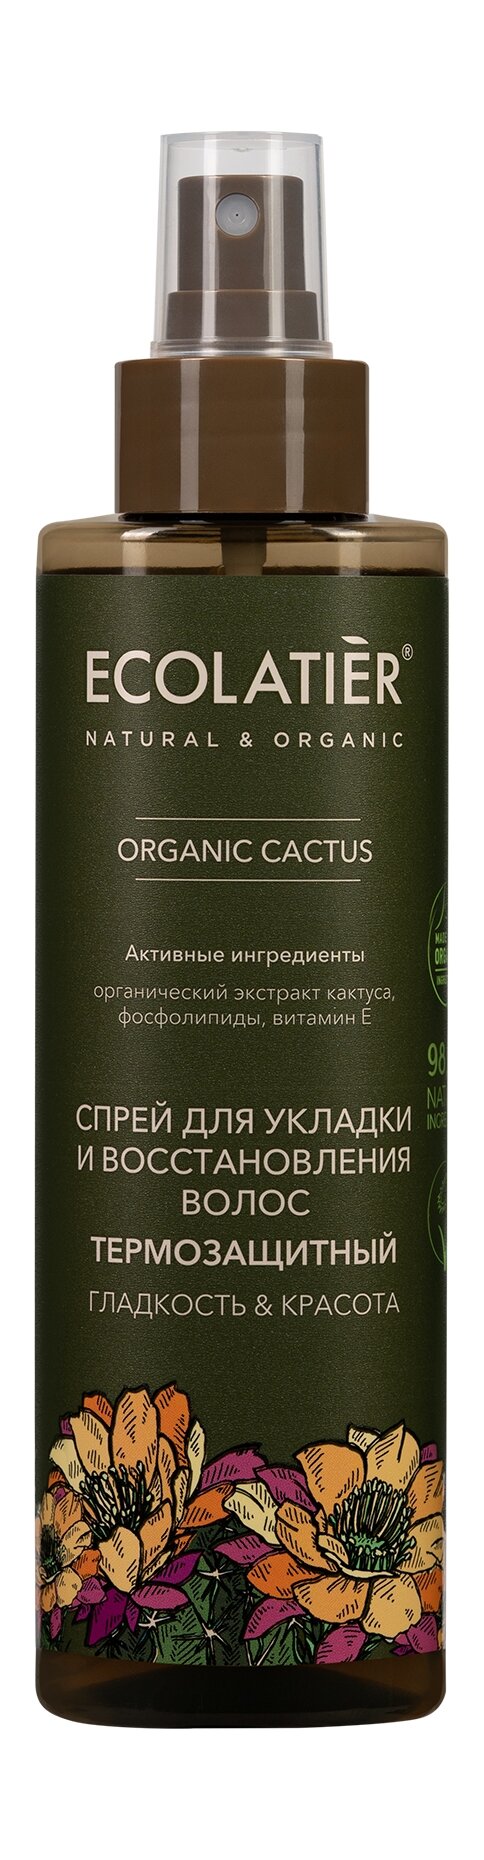 ECOLATIER Спрей для укладки и восстановления волос термозащитный Гладкость & Красота Organic Cactus, 200 мл